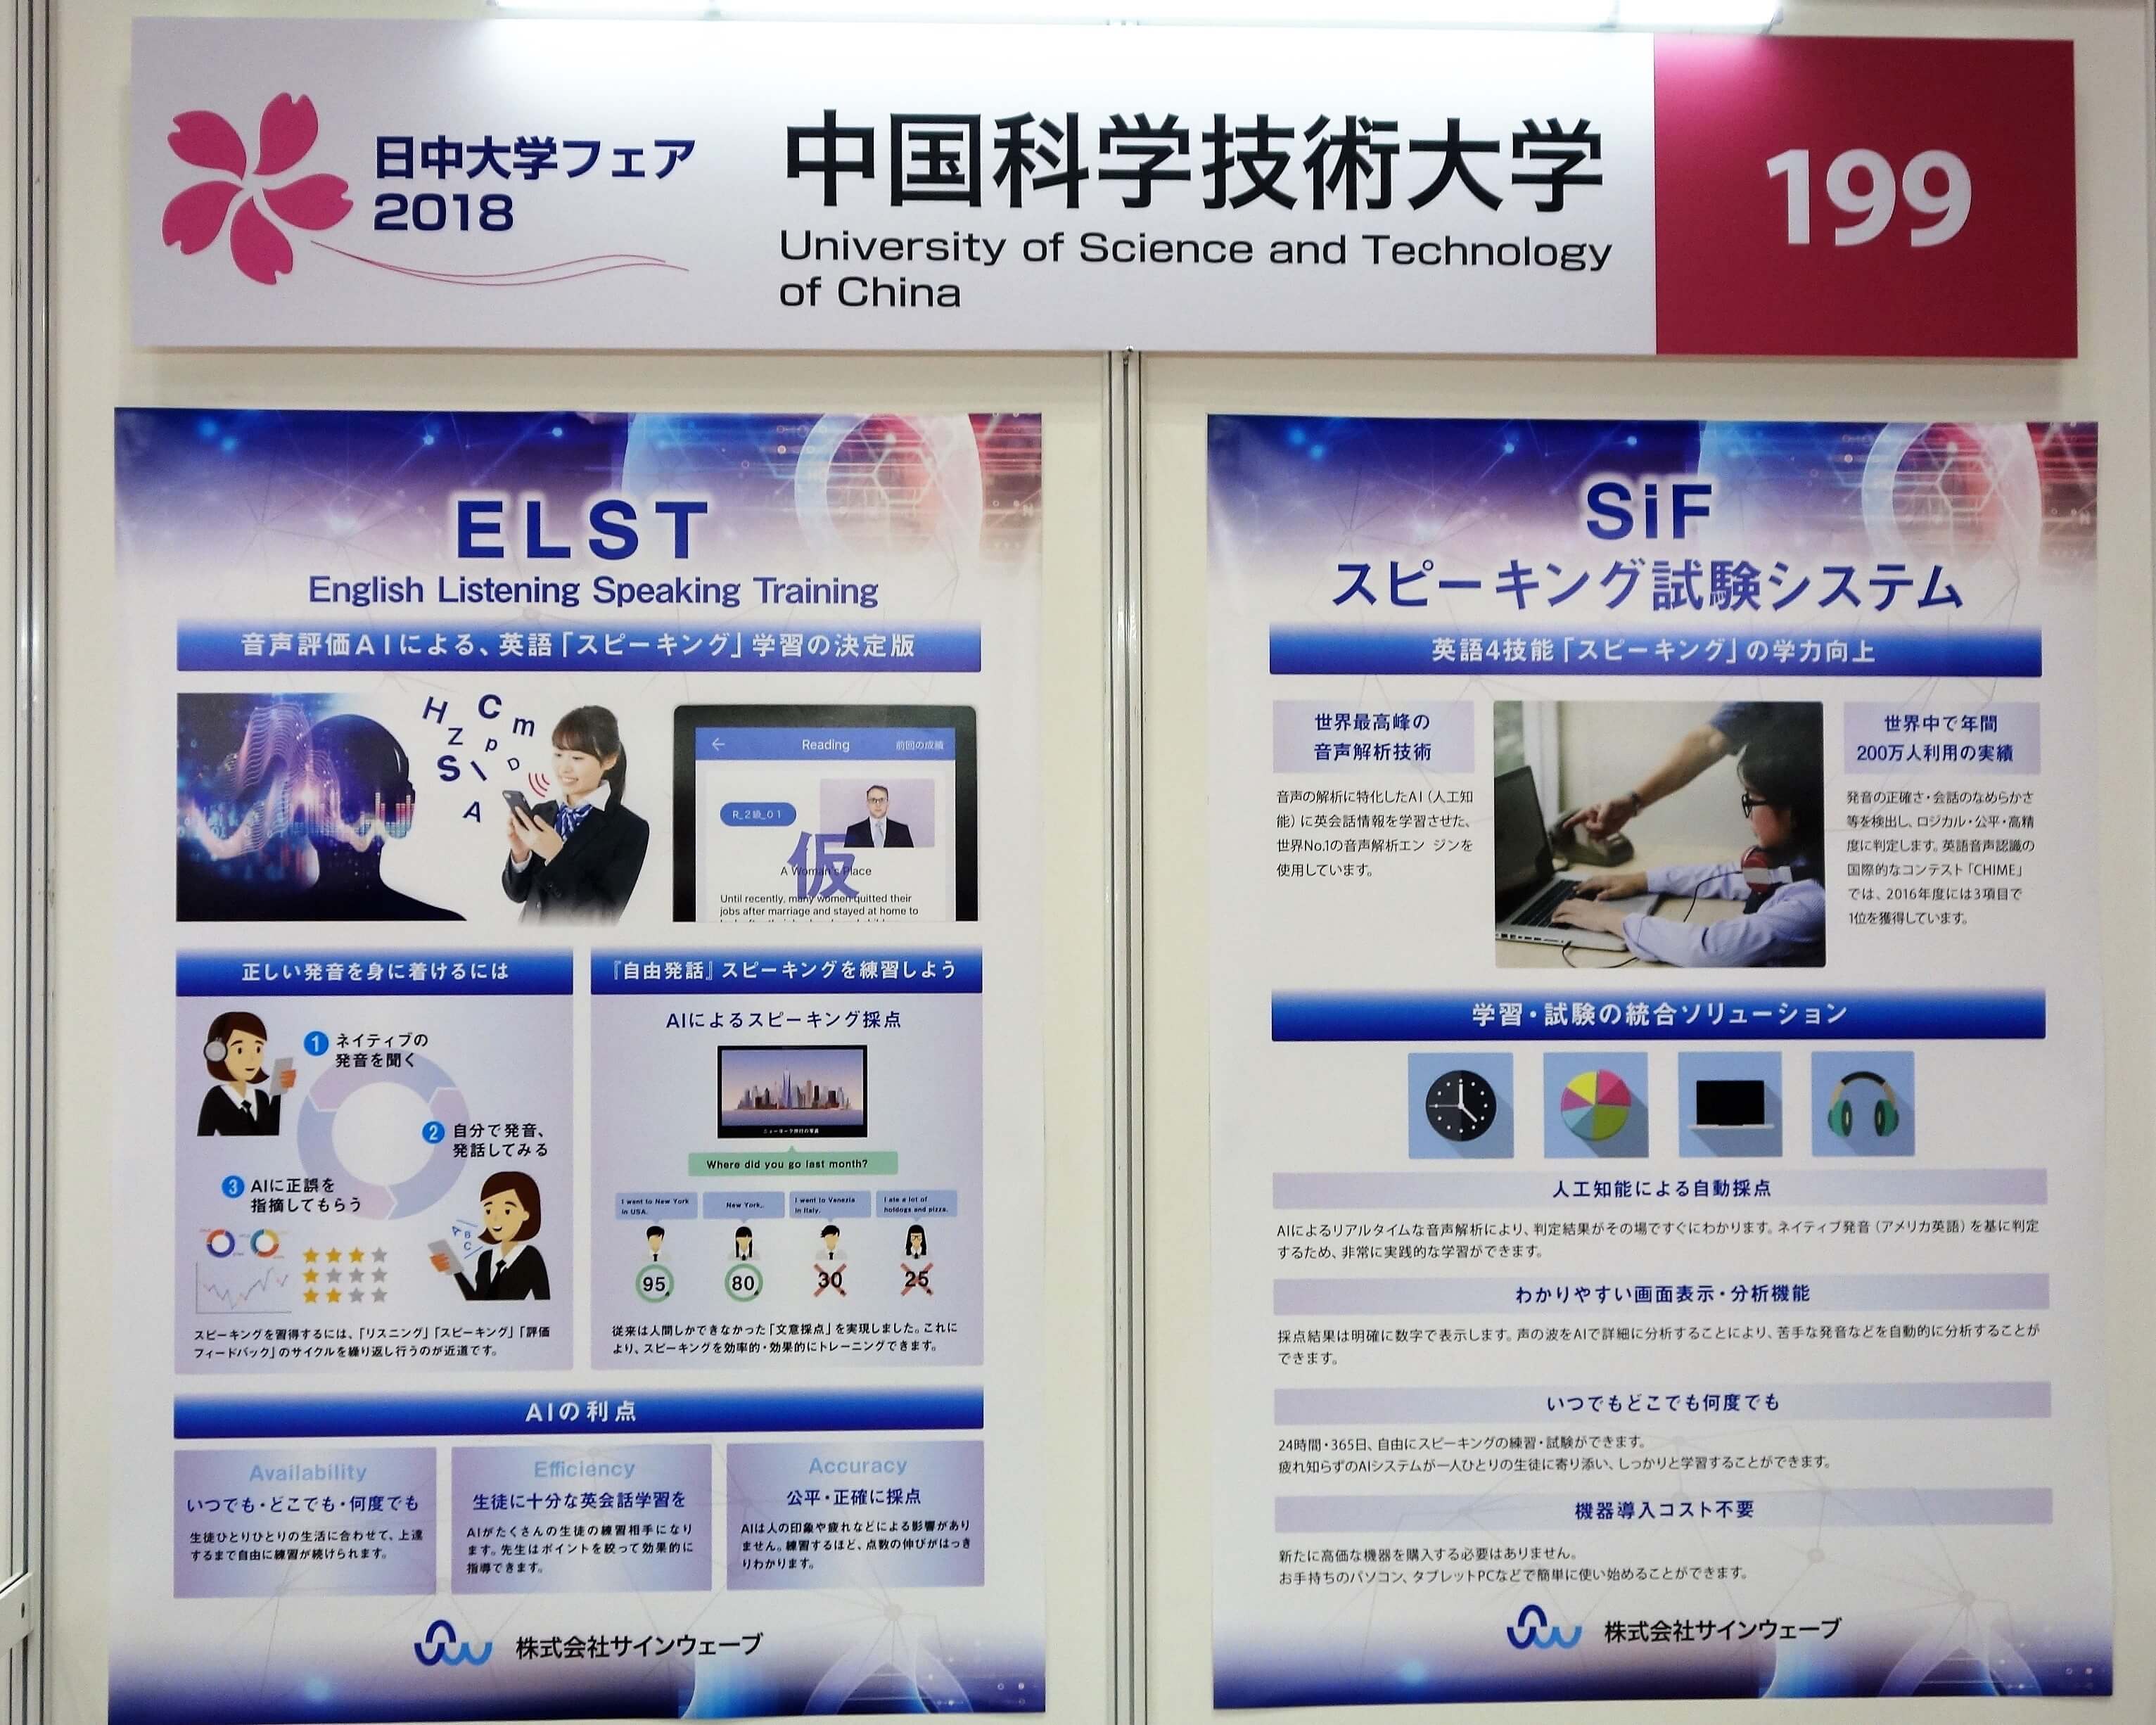 中国科技大学的科大讯飞旗下的Sinewave人工智能教育公司展示了自主研发的智能语言学习系统